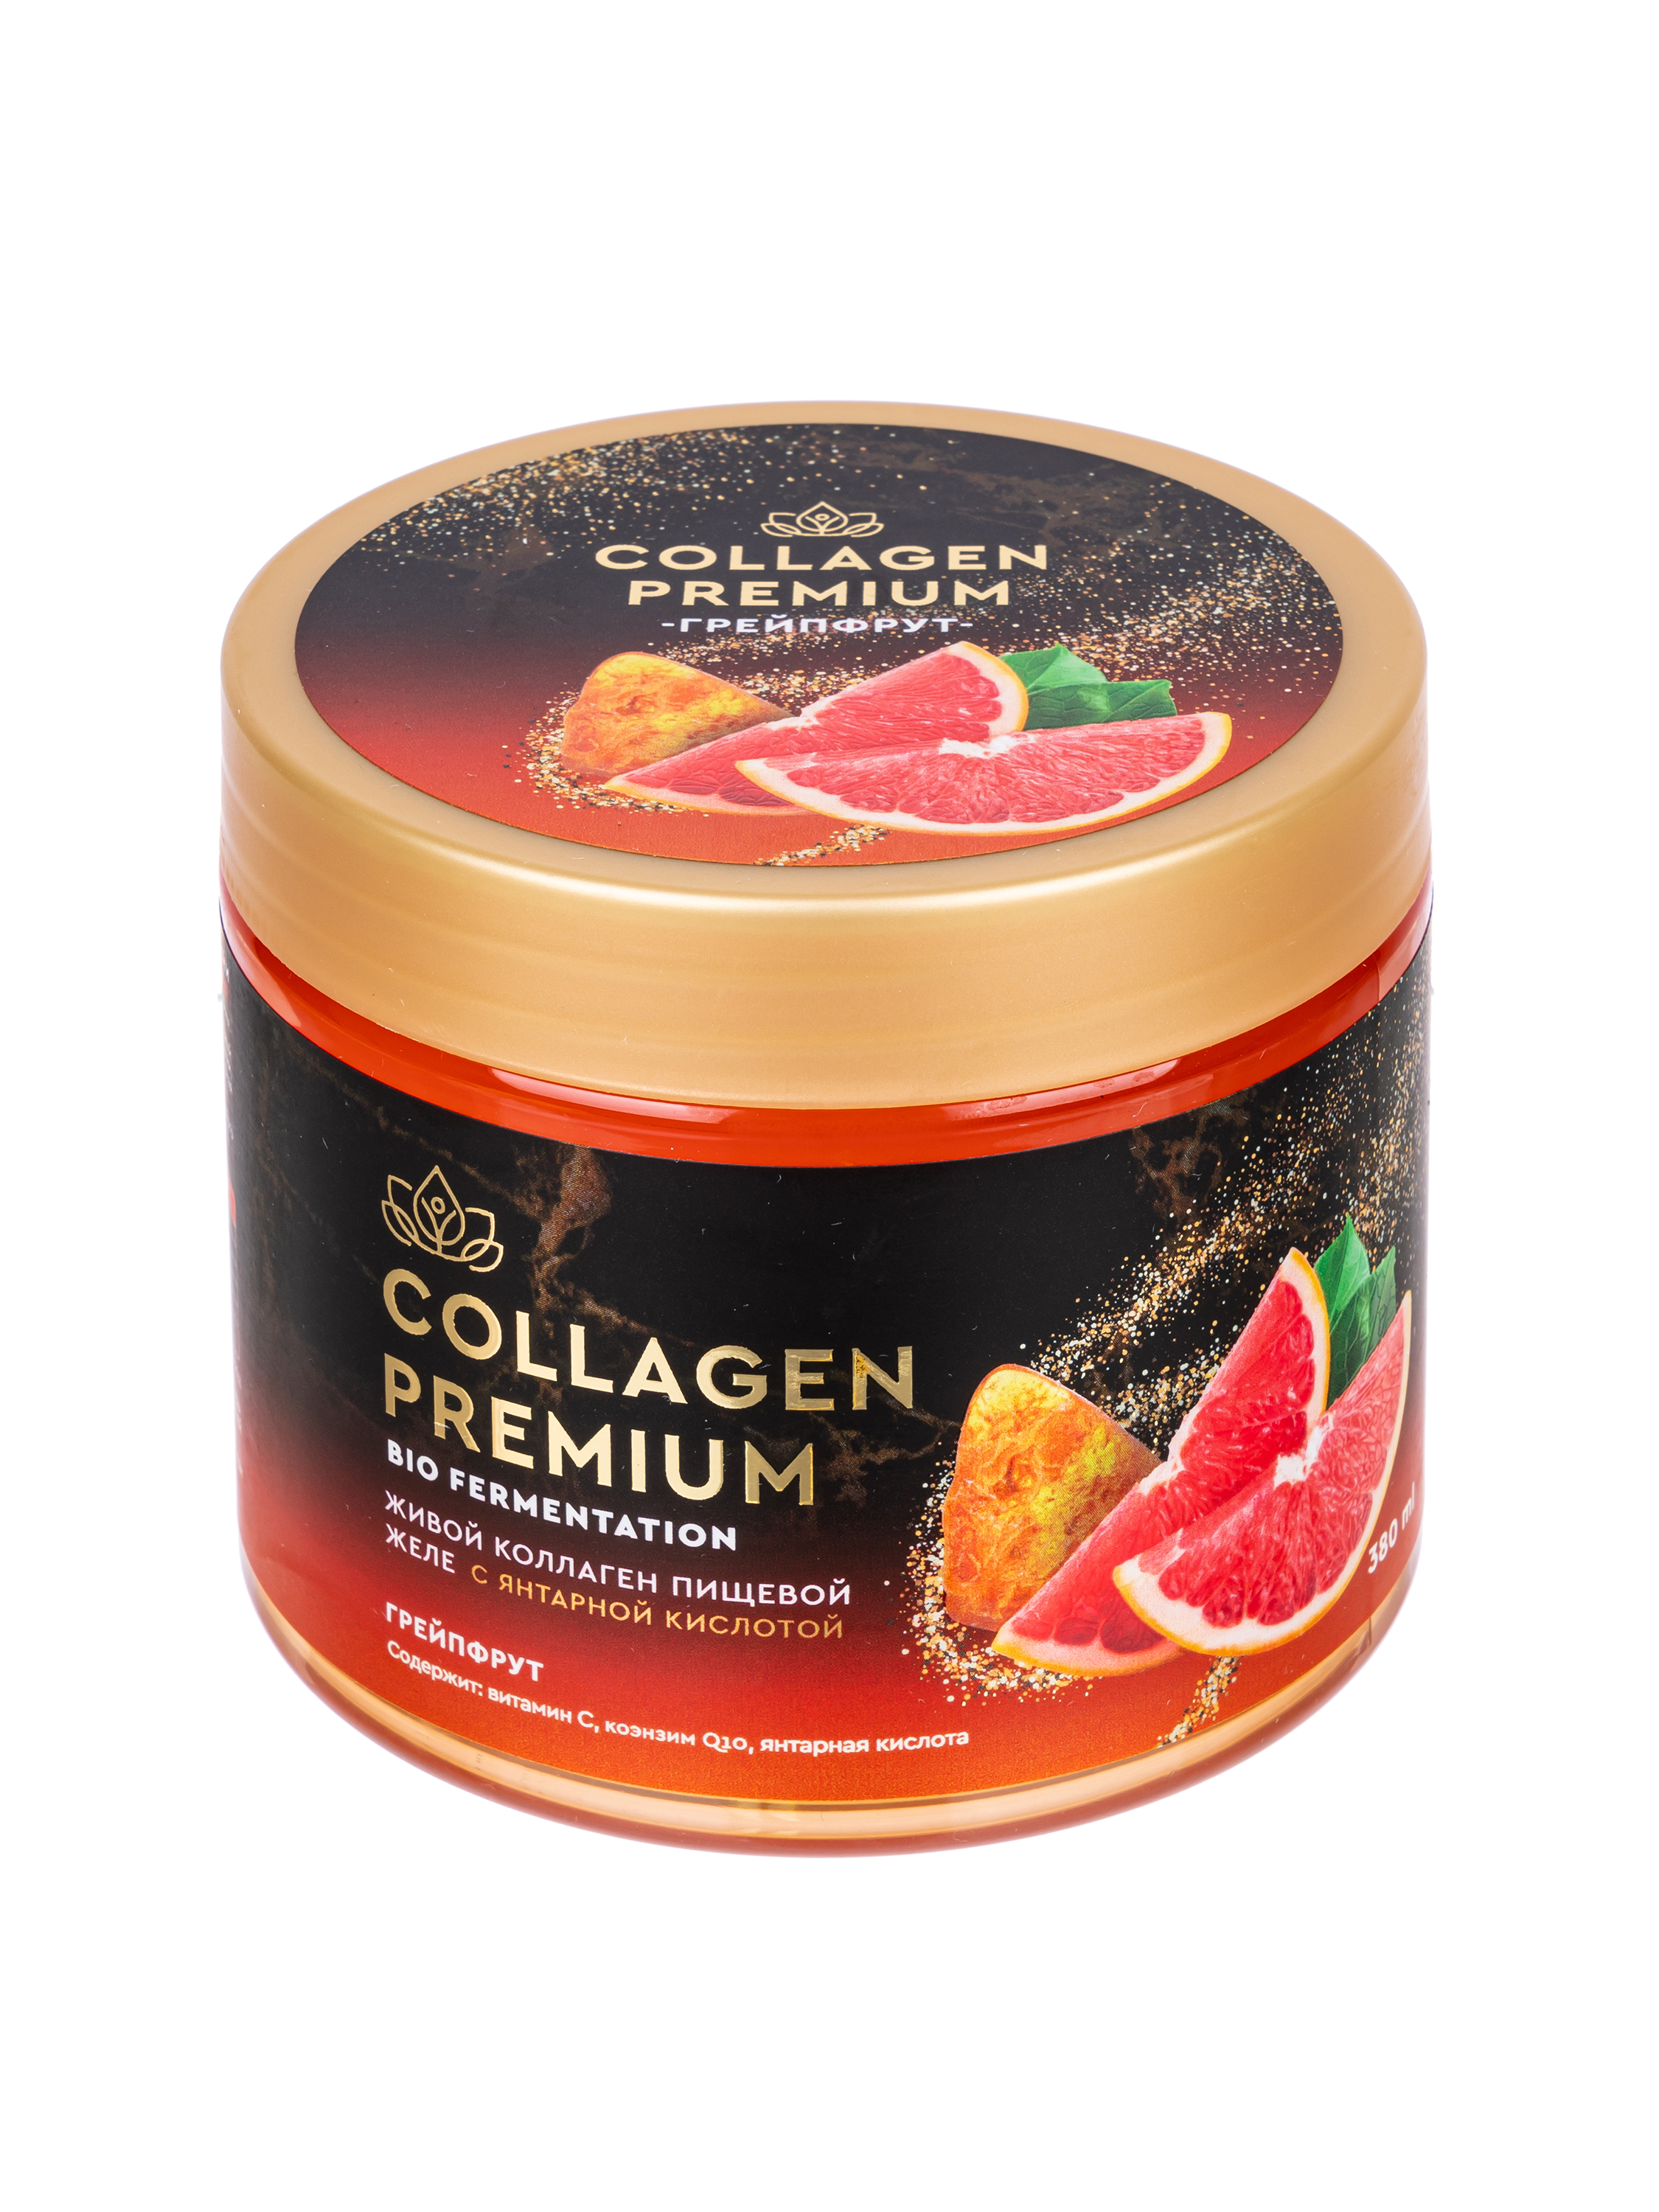 Collagen-premium c Янтарной кислотой и соком грейпфрута 380 мл